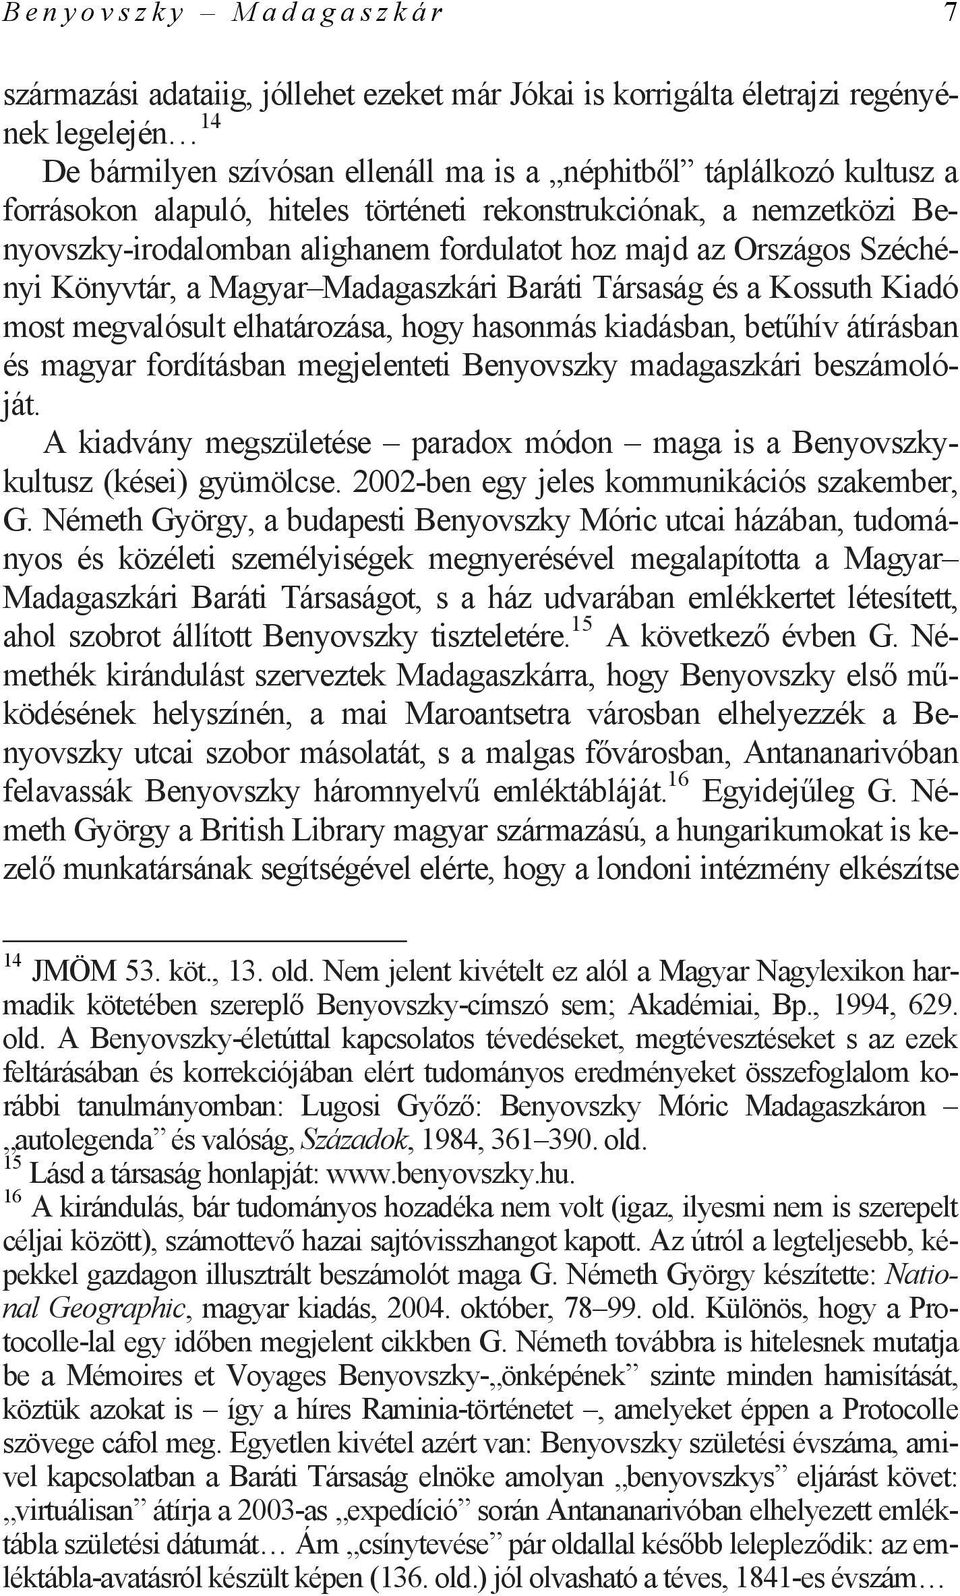 Kossuth Kiadó most megvalósult elhatározása, hogy hasonmás kiadásban, betűhív átírásban és magyar fordításban megjelenteti Benyovszky madagaszkári beszámolóját.